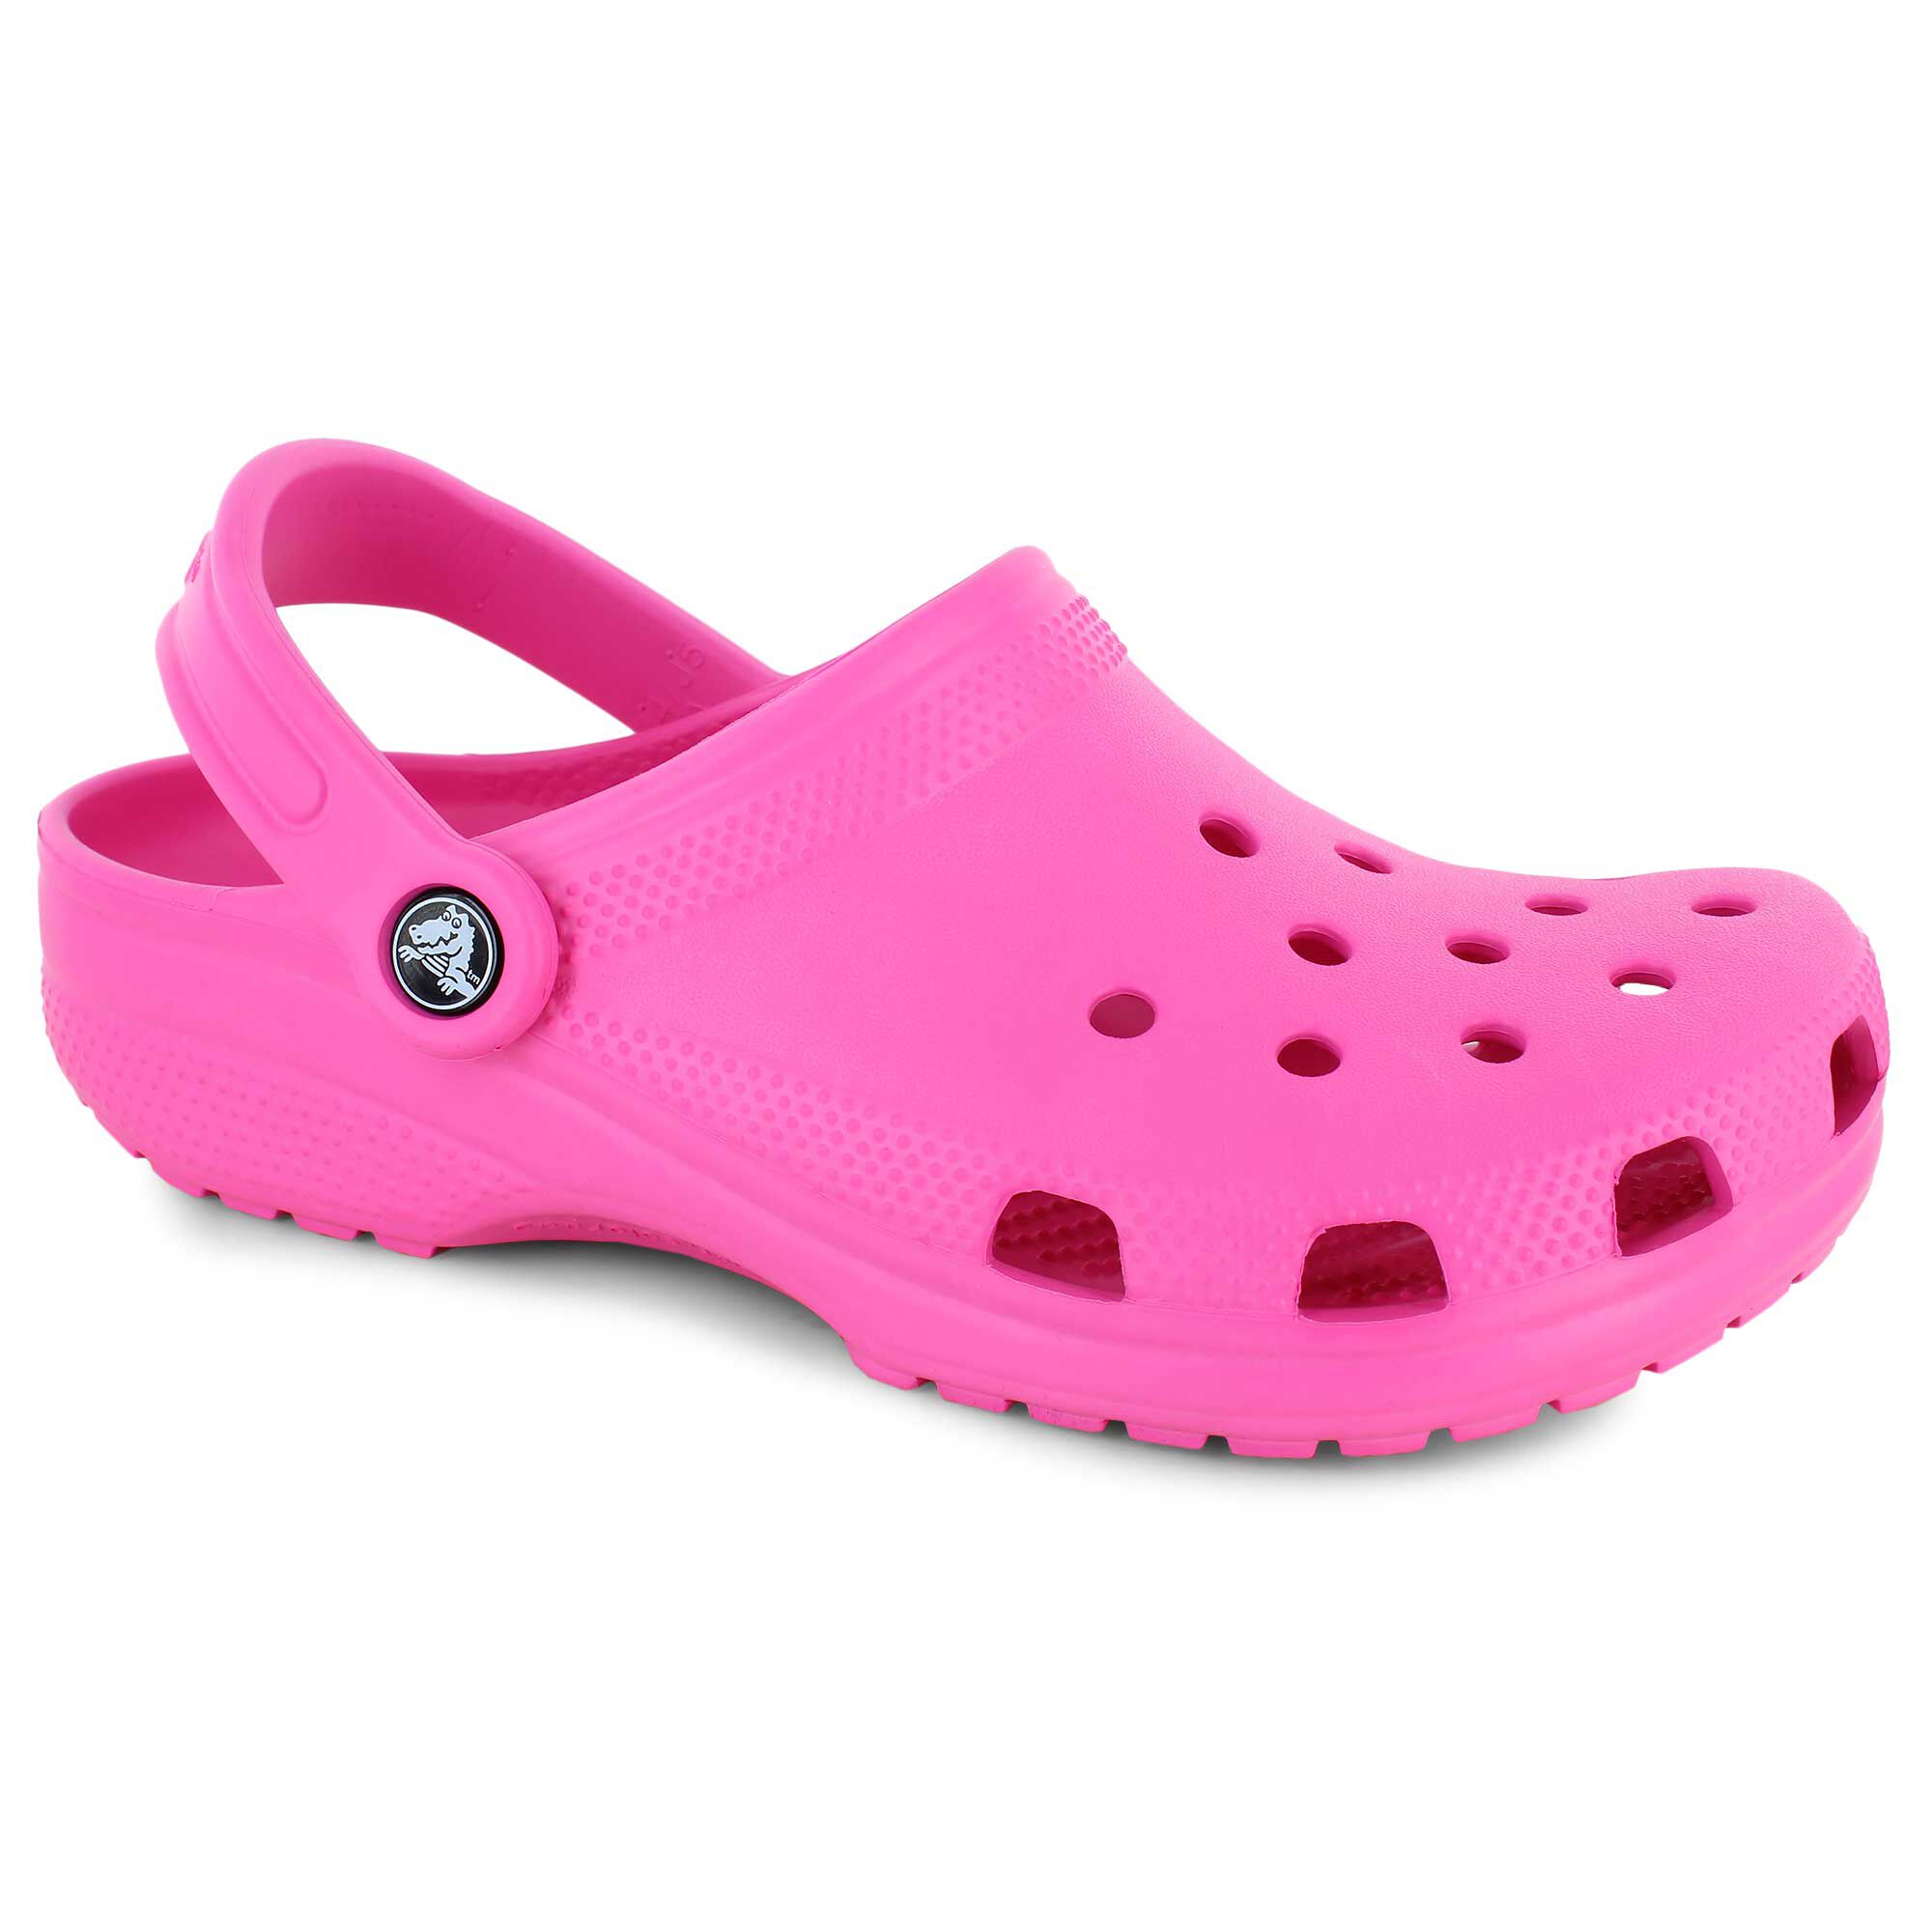 shoe department women's crocs